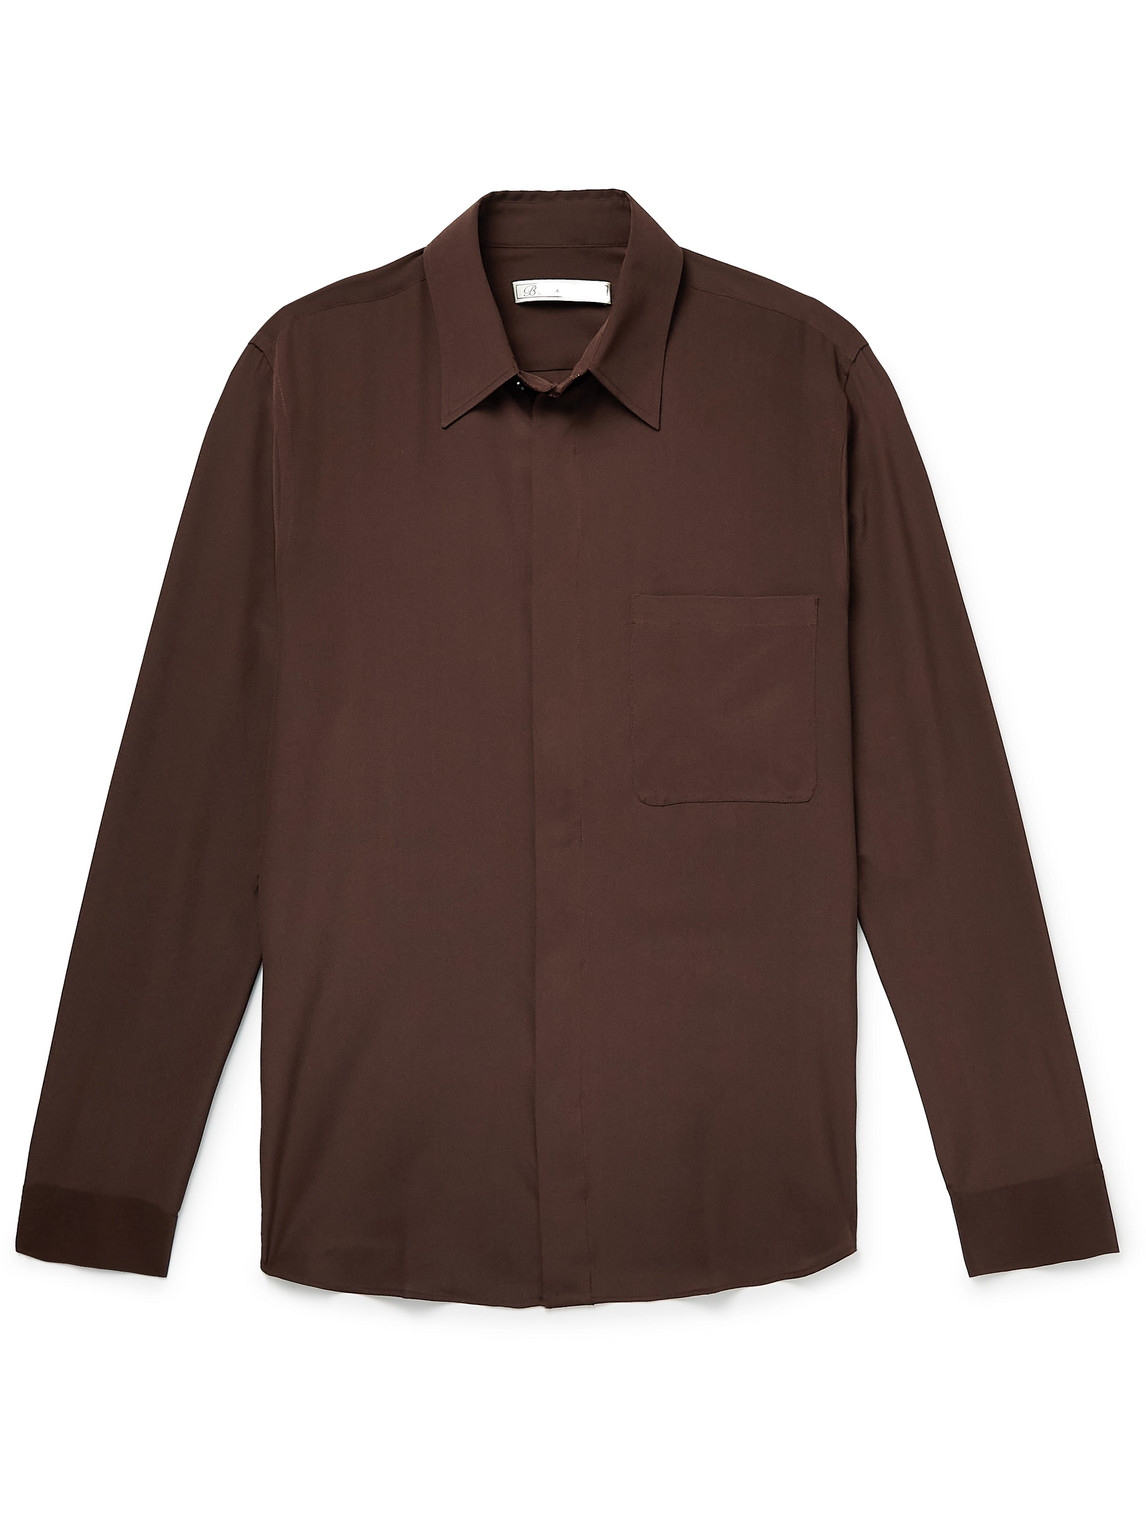 Umit Benan B+ Silk Shirt In Brown